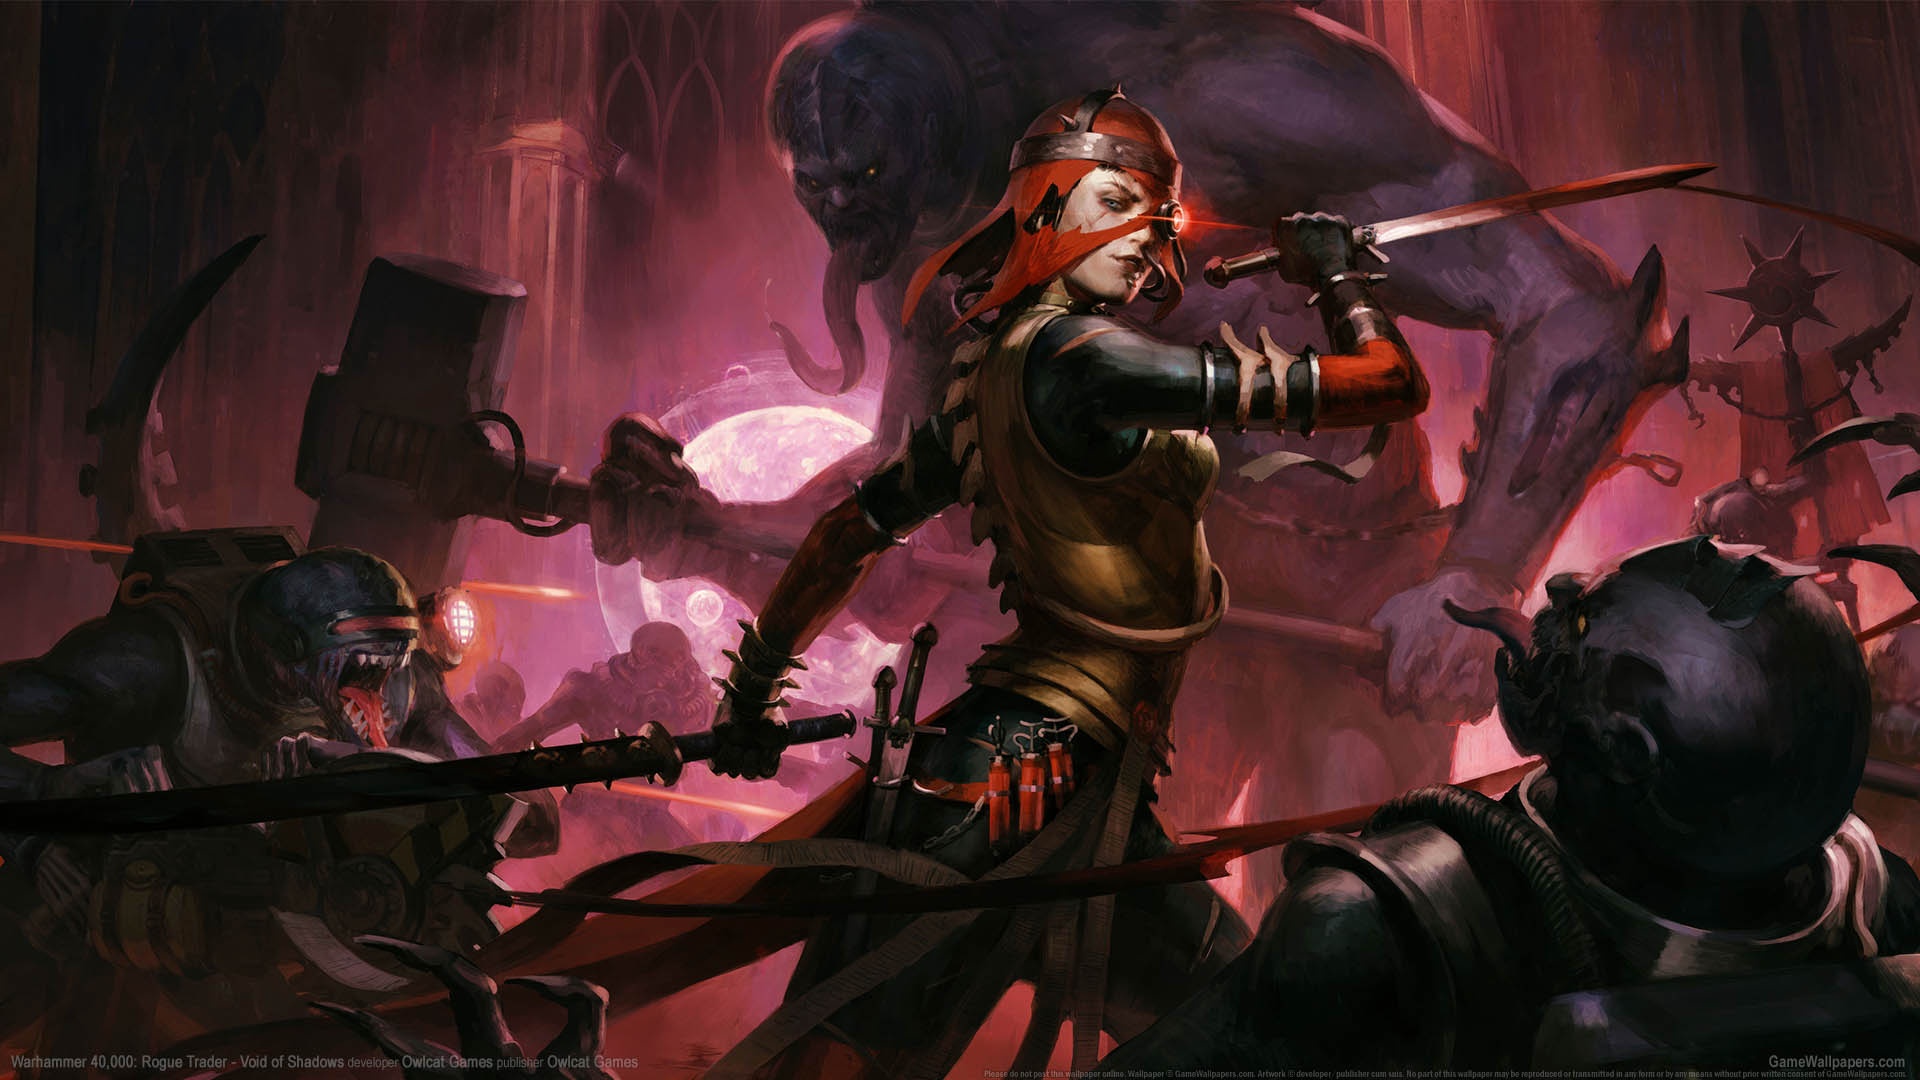 Warhammer 40,000: Rogue Trader - Void of Shadows fondo de escritorio 01 1920x1080